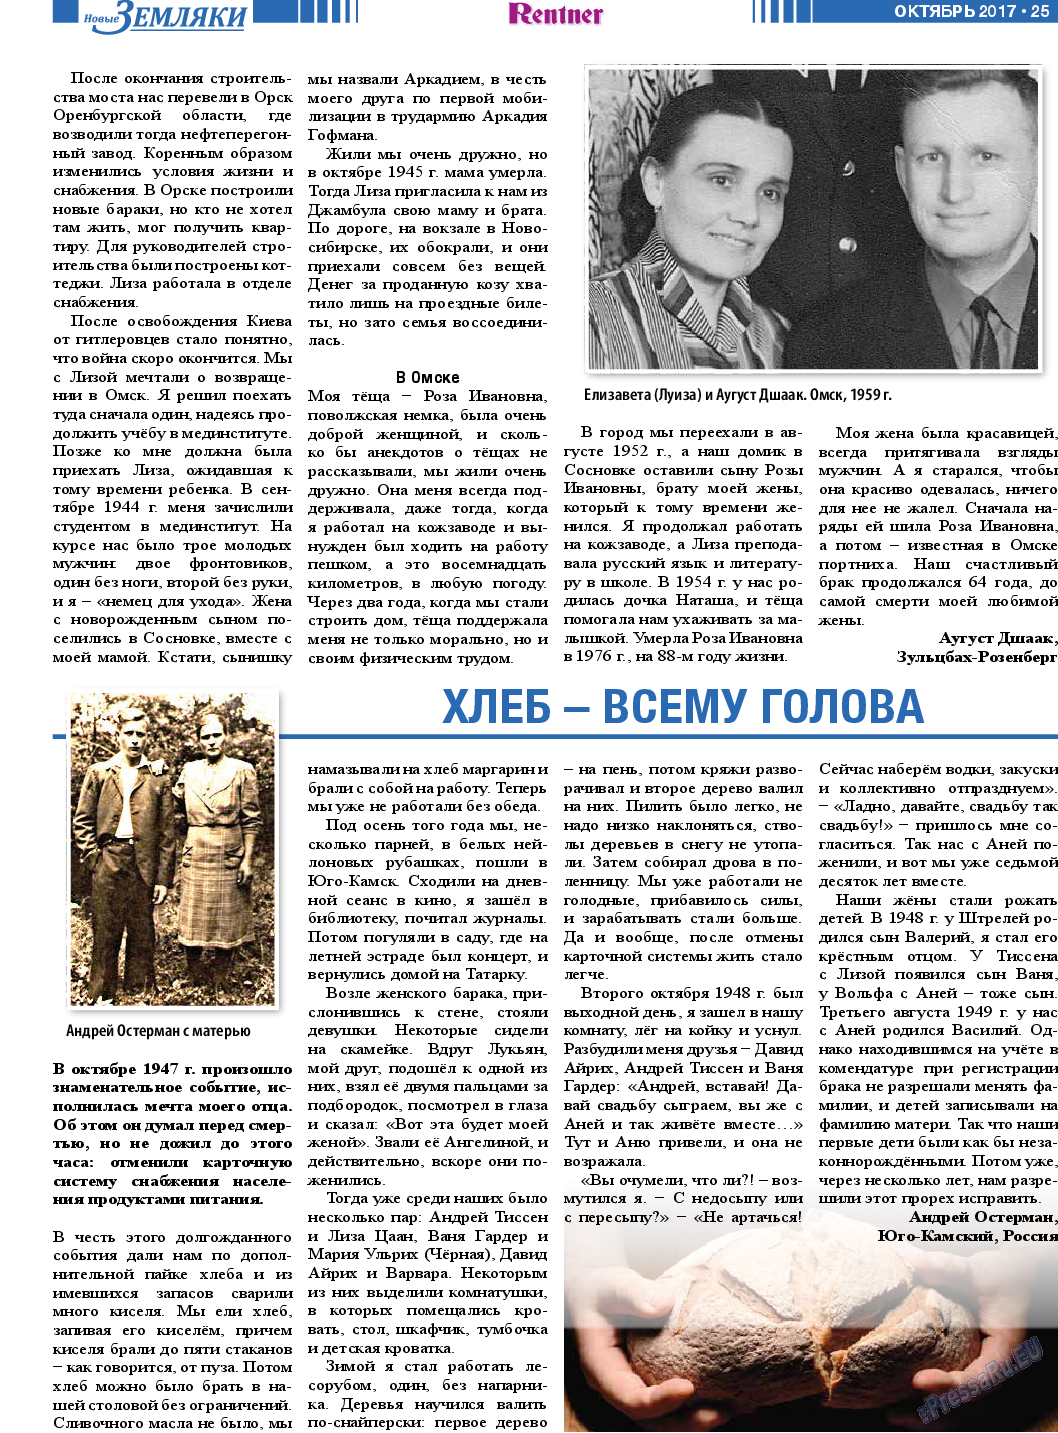 Новые Земляки (газета). 2017 год, номер 10, стр. 25